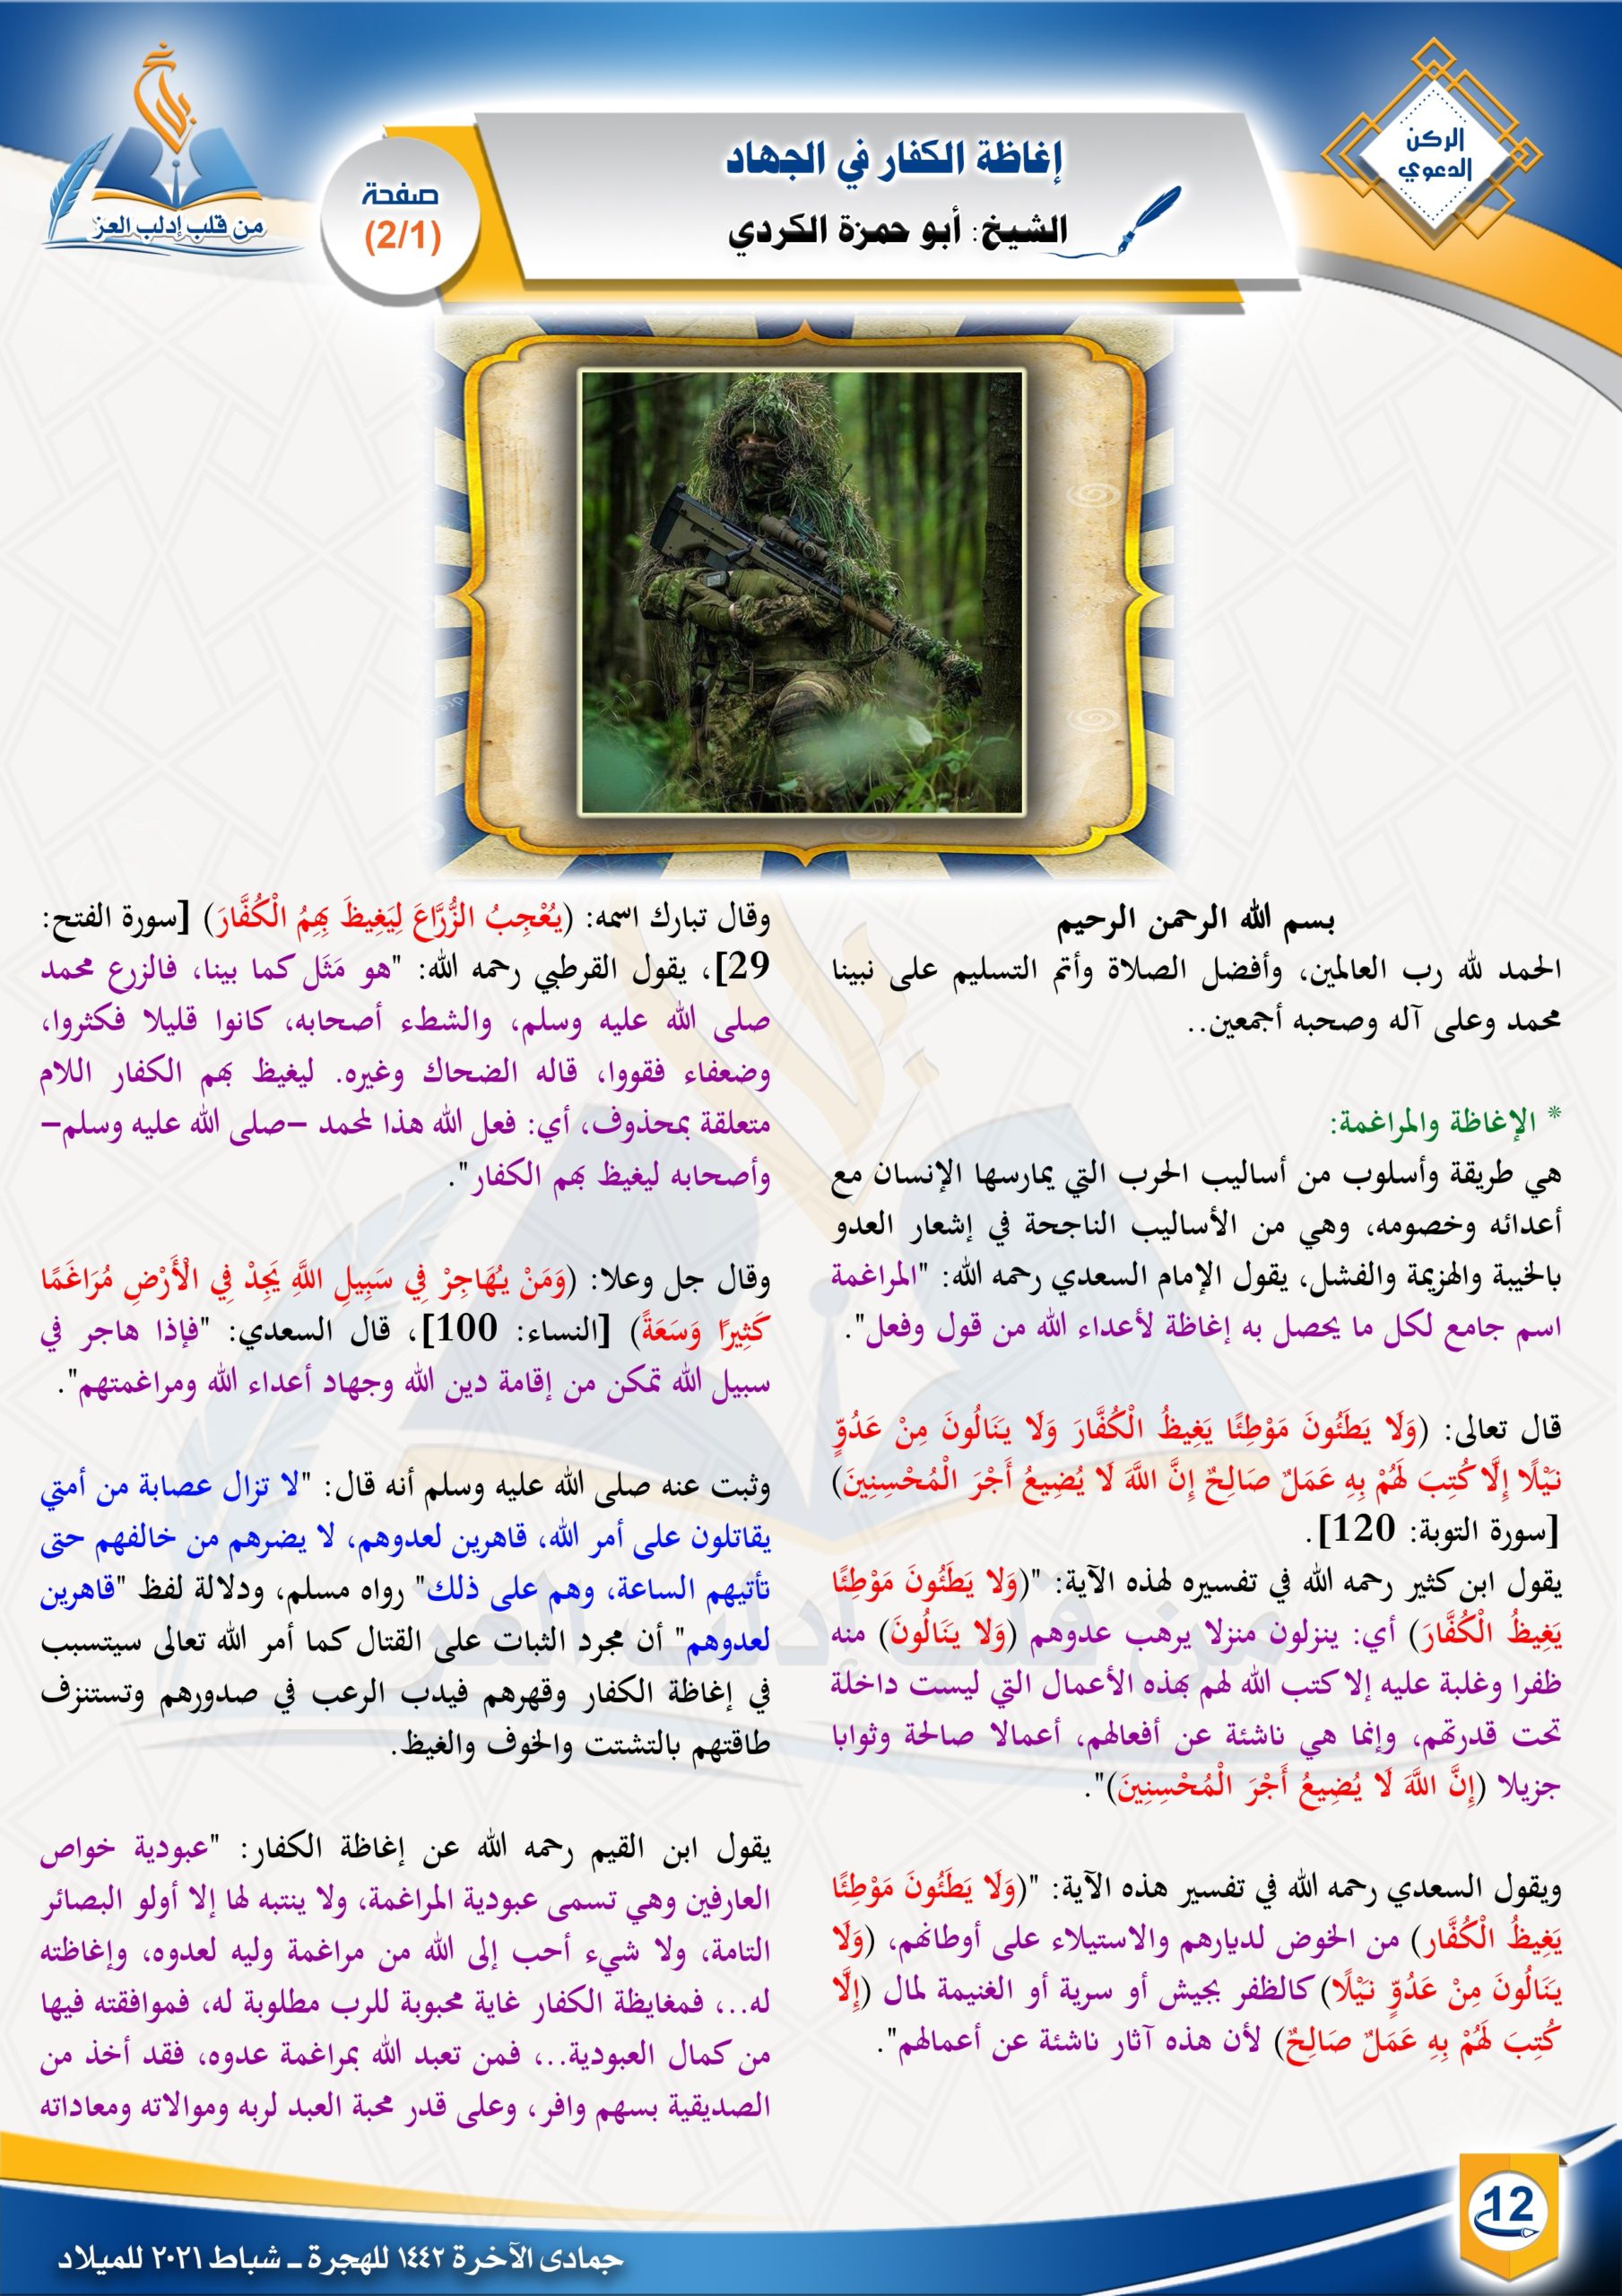 إغاظة الكفار في الجهاد |الركن الدعوي | مجلة بلاغ العدد 20 جمادى الآخرة 1442 الشيخ أبو حمزة الكردي